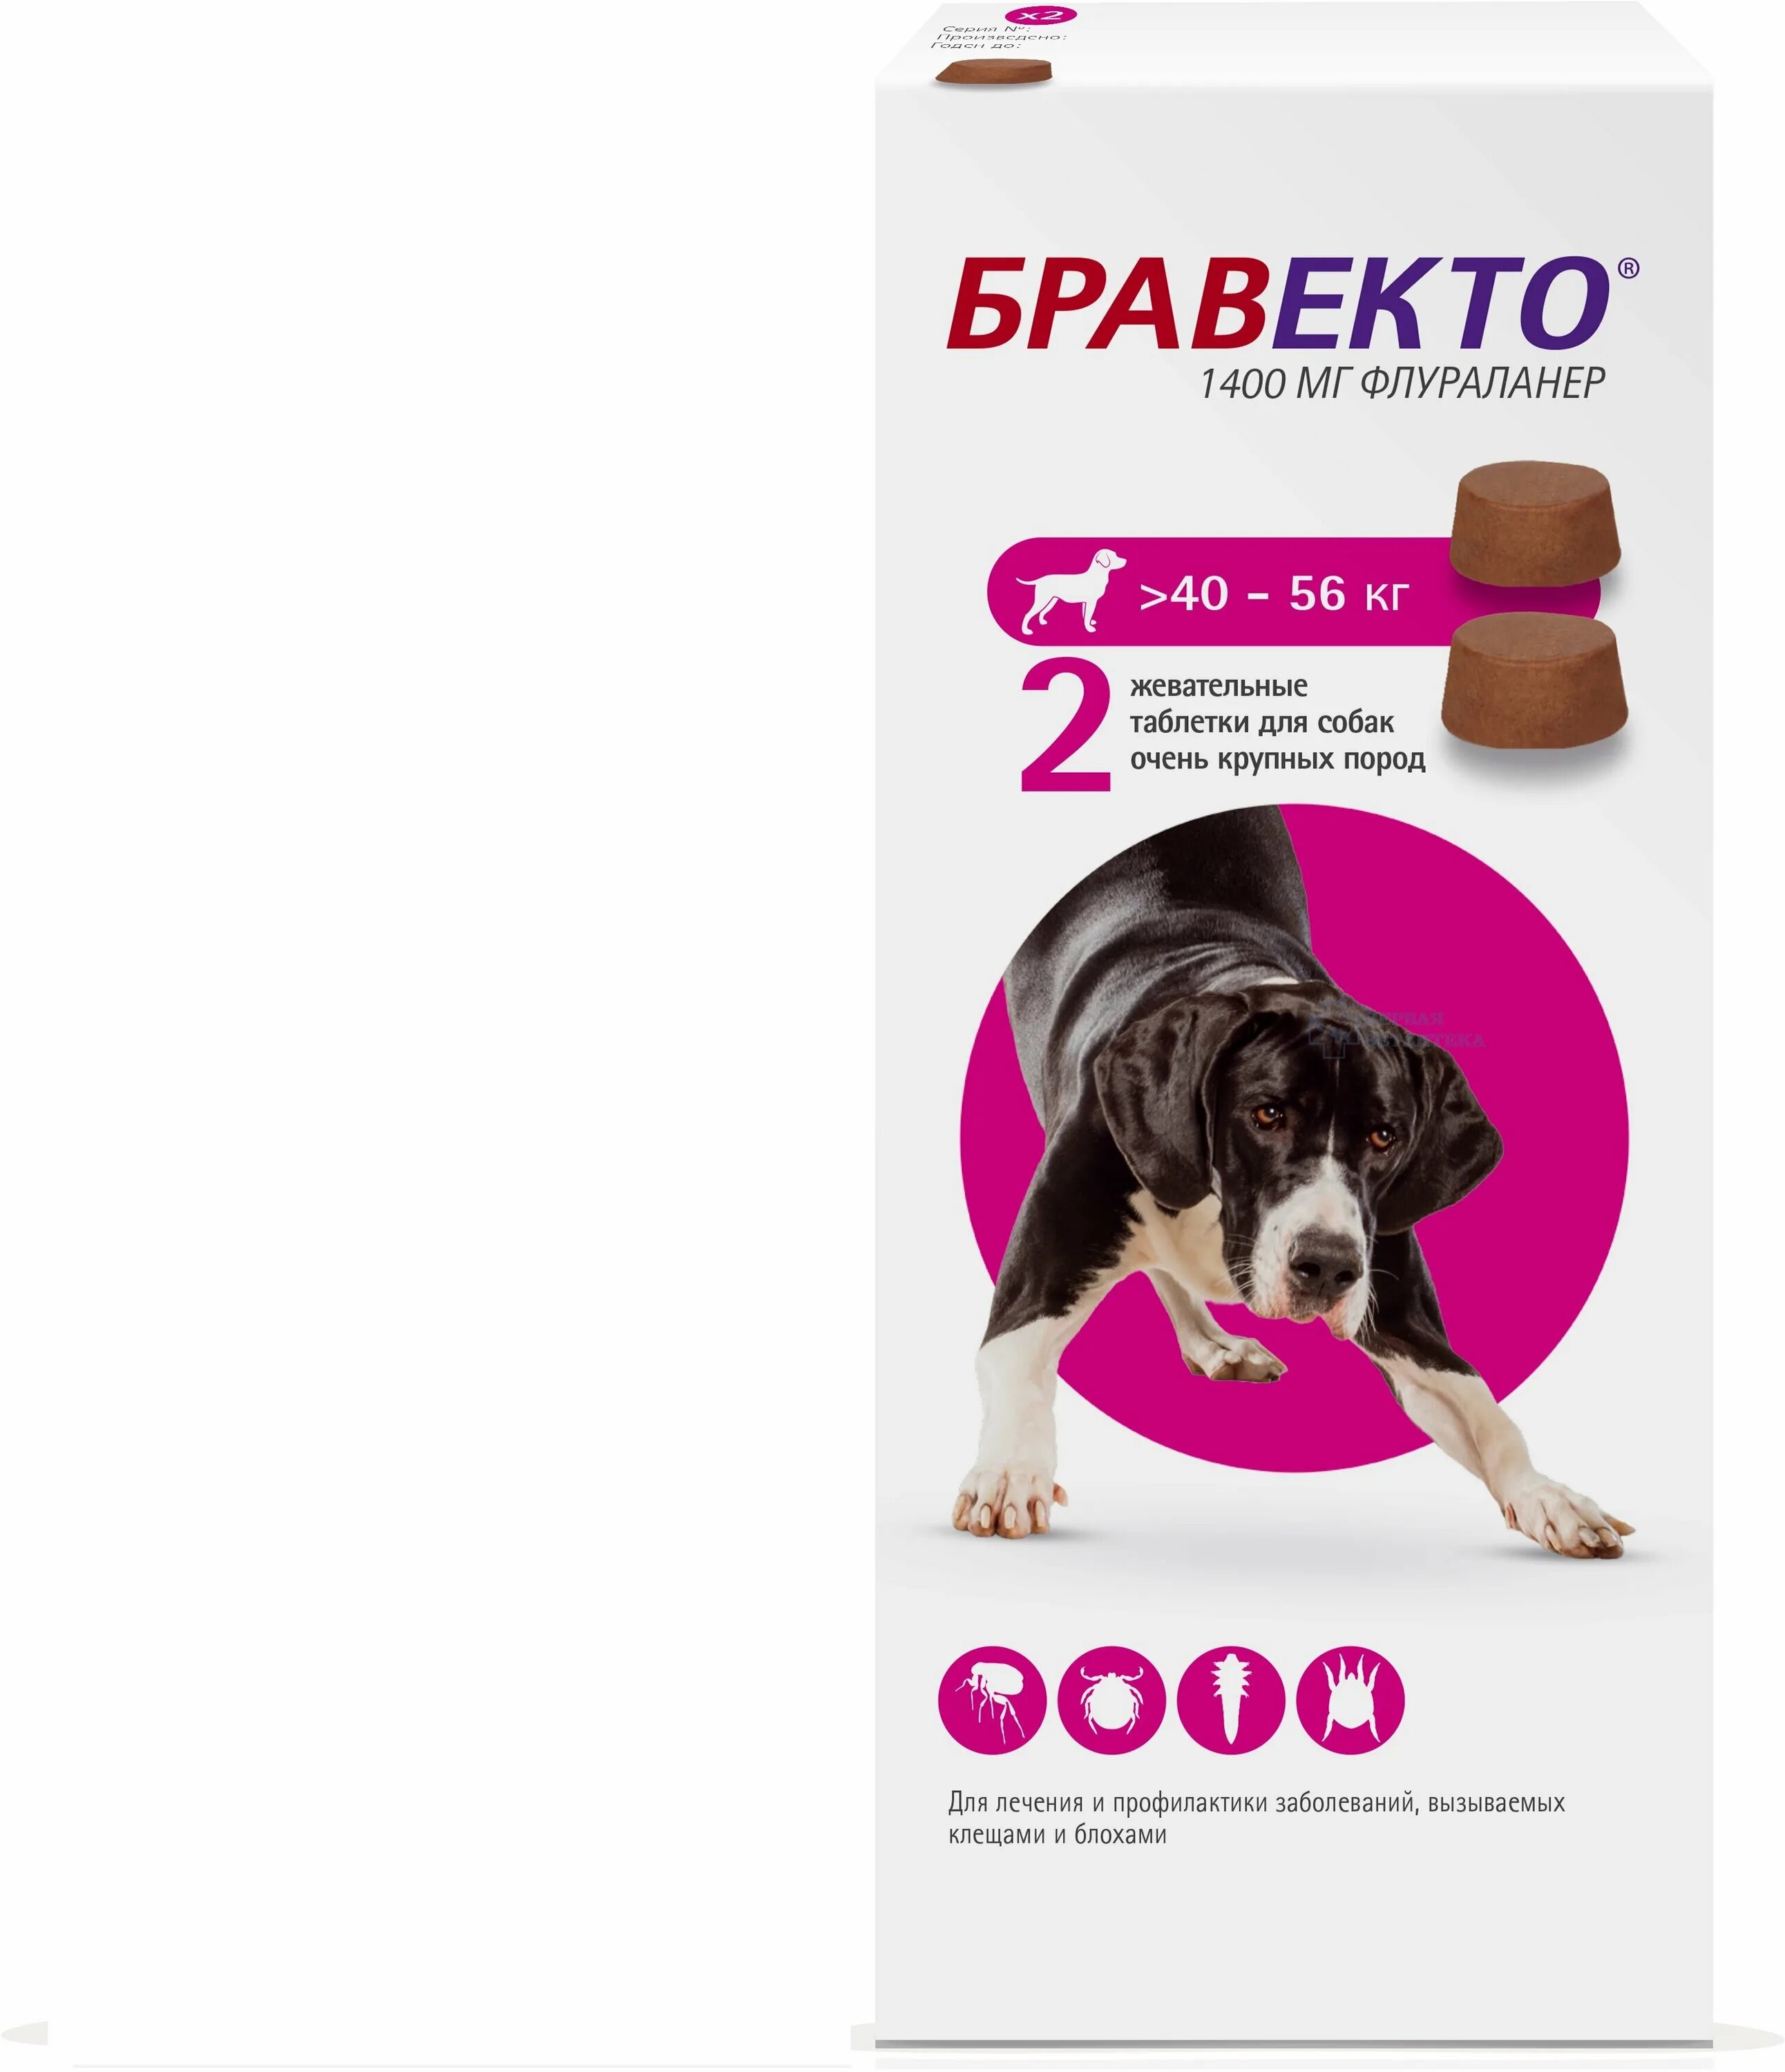 Бравекто 2 4 кг купить. Бравекто таблетки для собак 40-56. Таблетка Бравекто для собак 20-40 2 таблетка. Бравекто (MSD animal Health) таблетки от блох и клещей для собак 40-56 кг. Бравекто 1400 мг для собак.